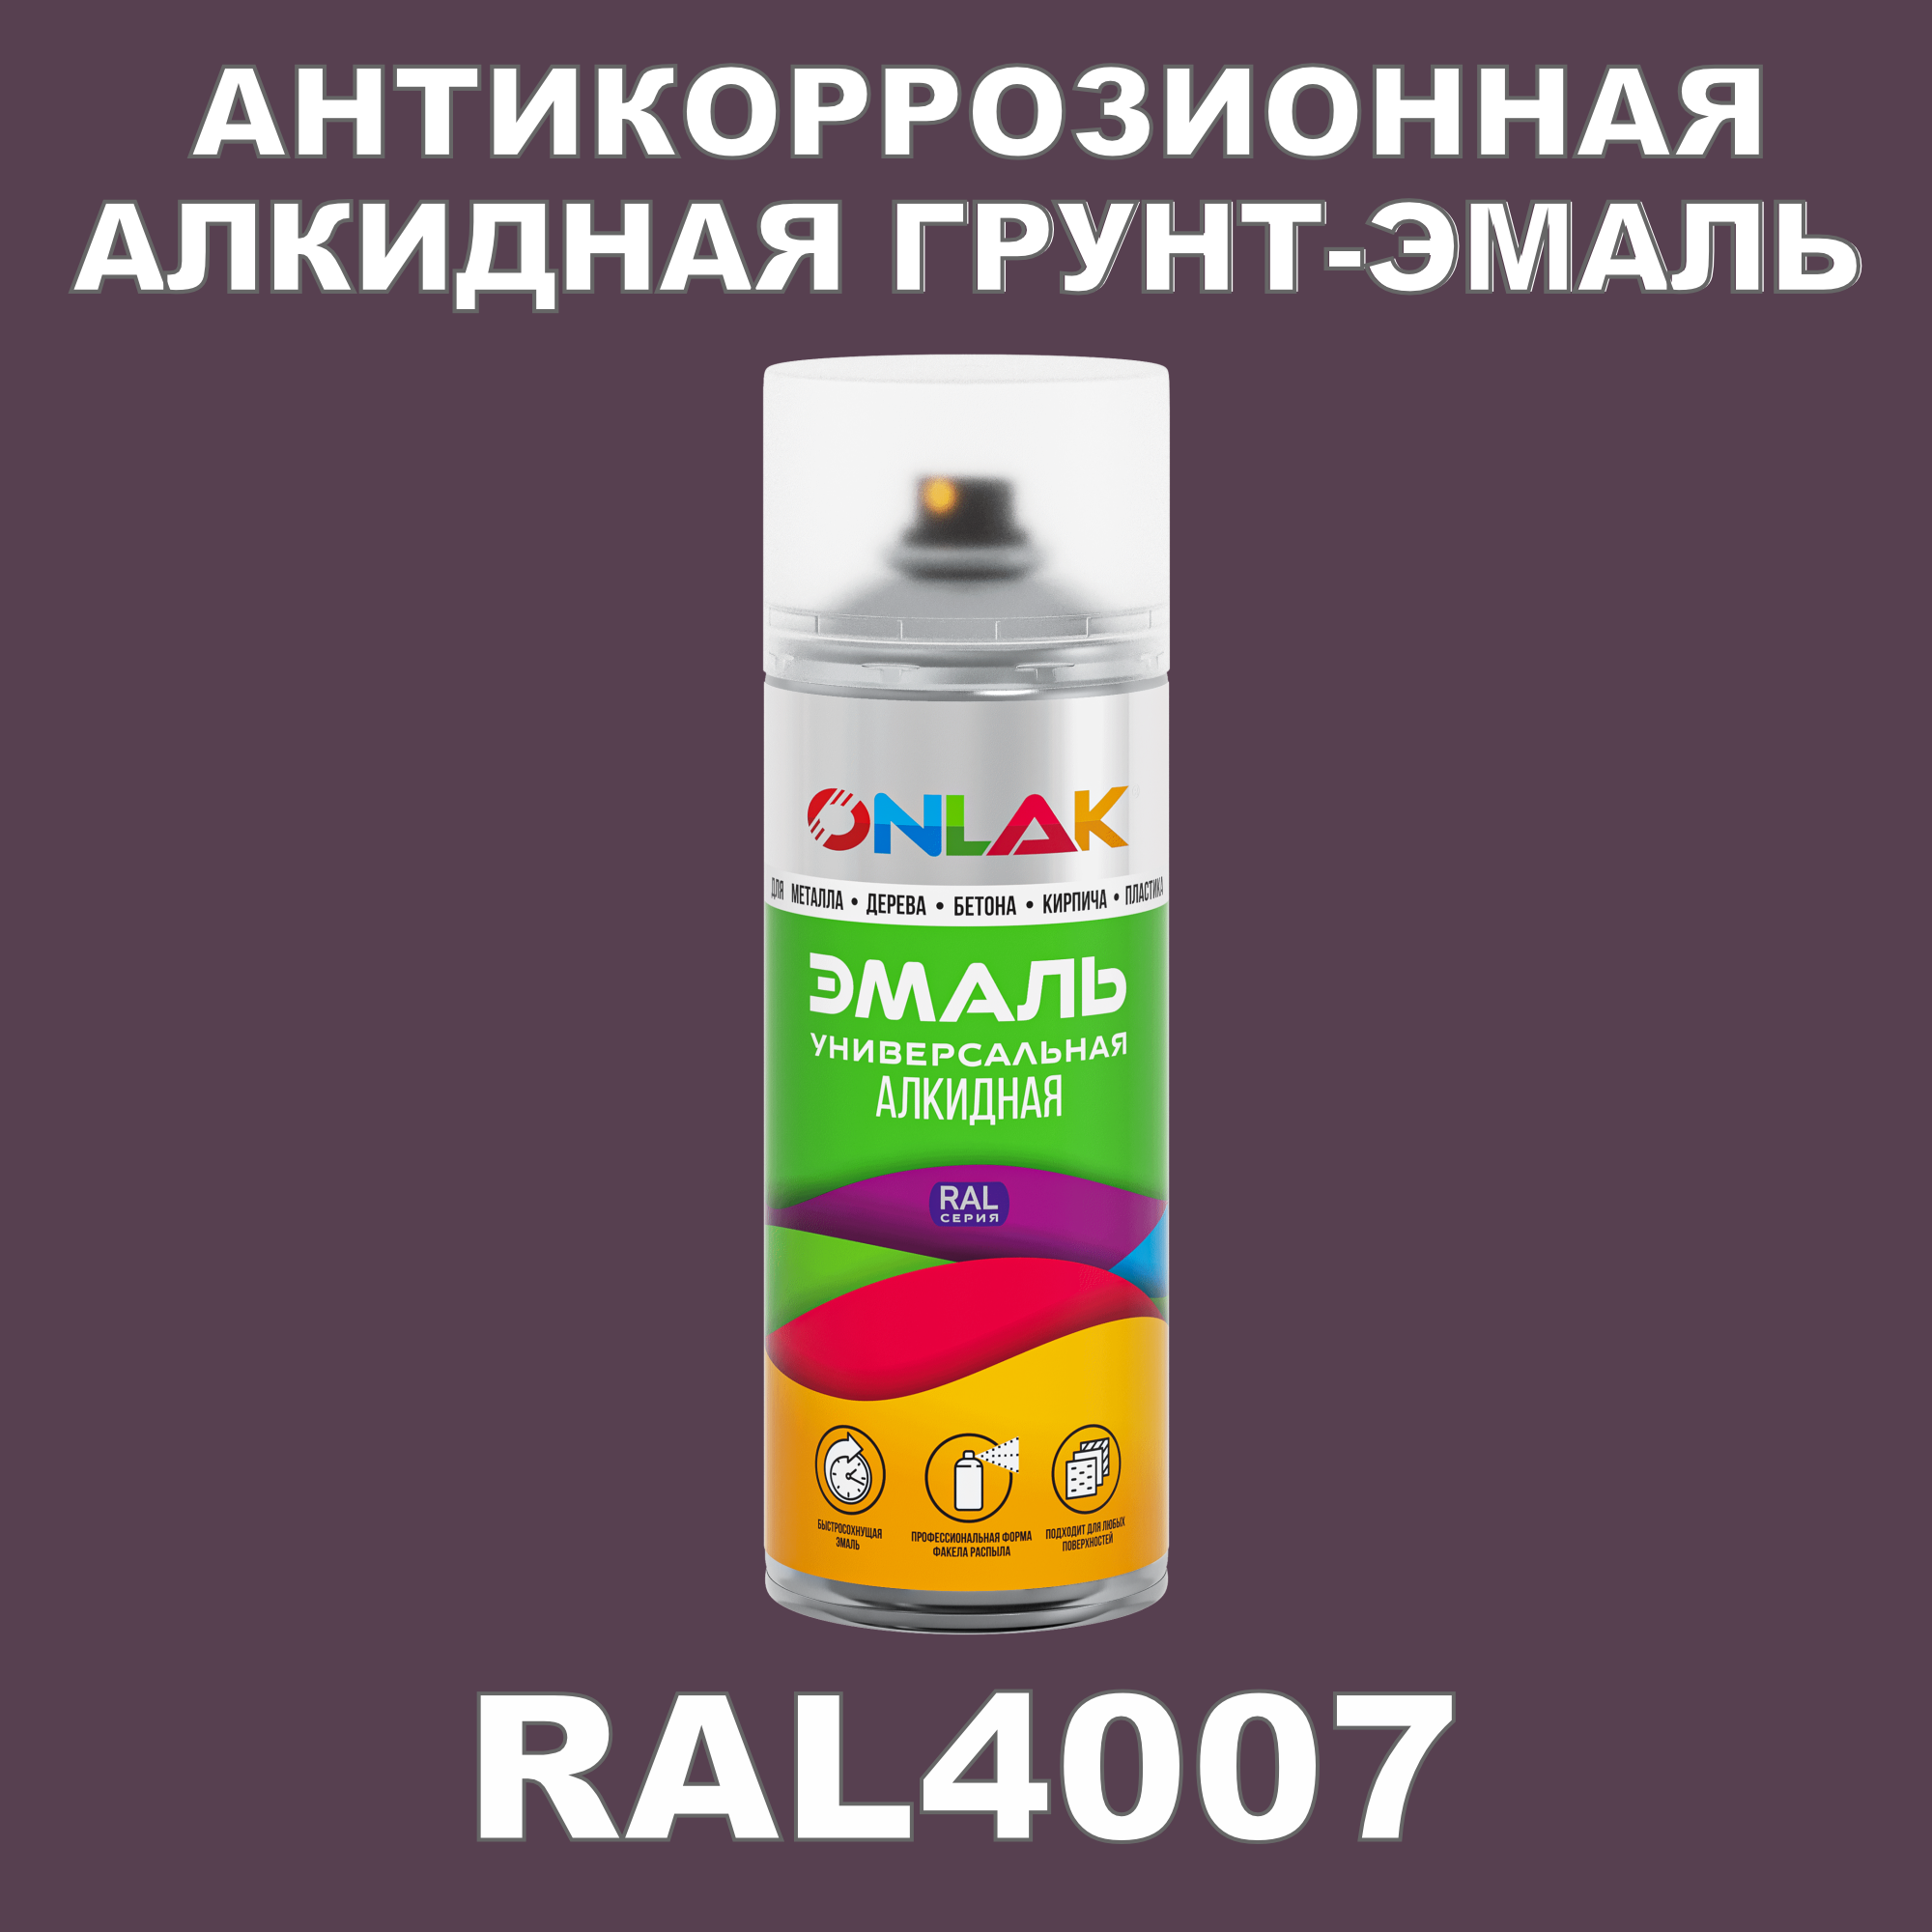 Антикоррозионная грунт-эмаль ONLAK RAL 4007,фиолетовый,572 мл artuniq color violet ной грунт для аквариума фиолетовый 1 кг